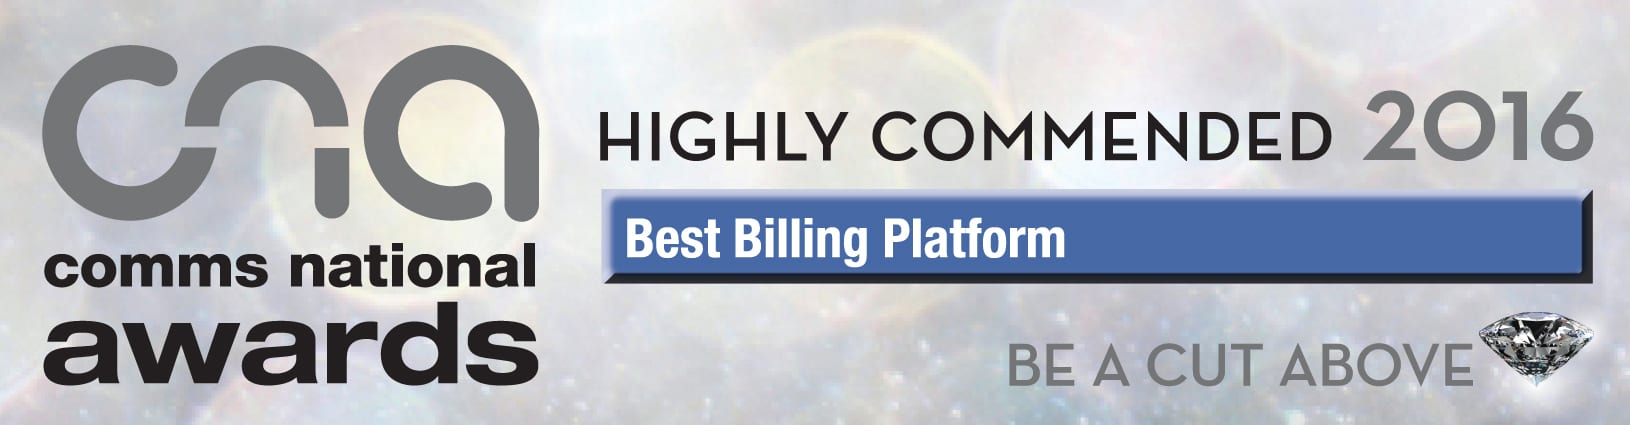 Inform Billing - Best Billing Platform